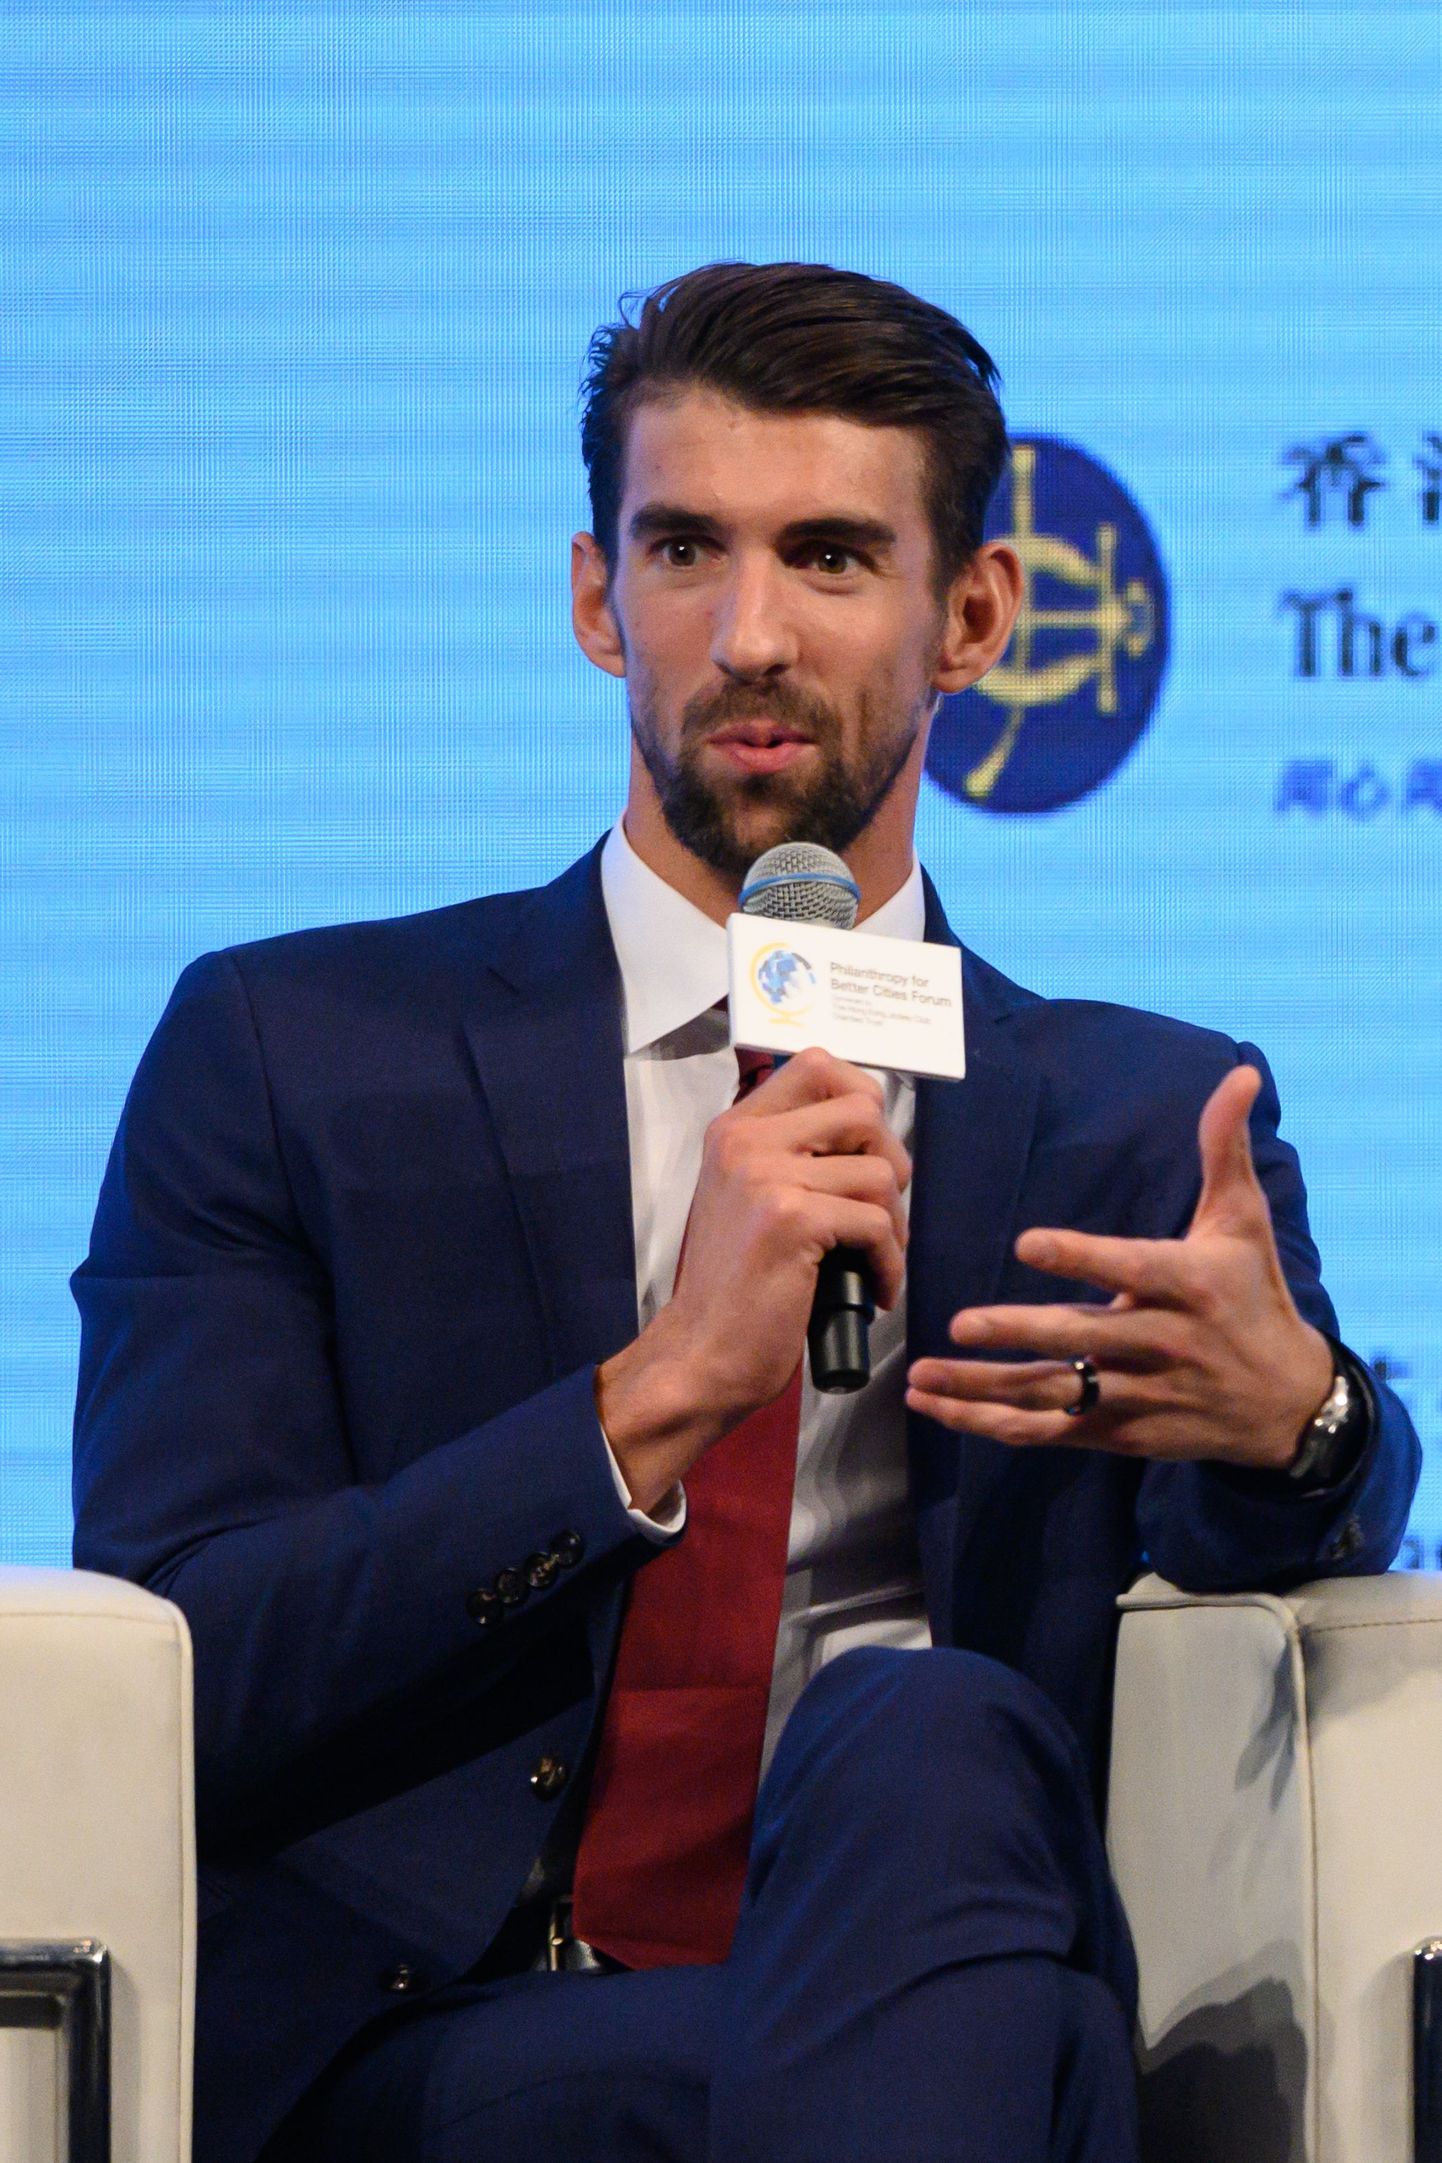 Michael Phelps avaldas oma arvamuse Venemaa dopinguskandaali kohta.